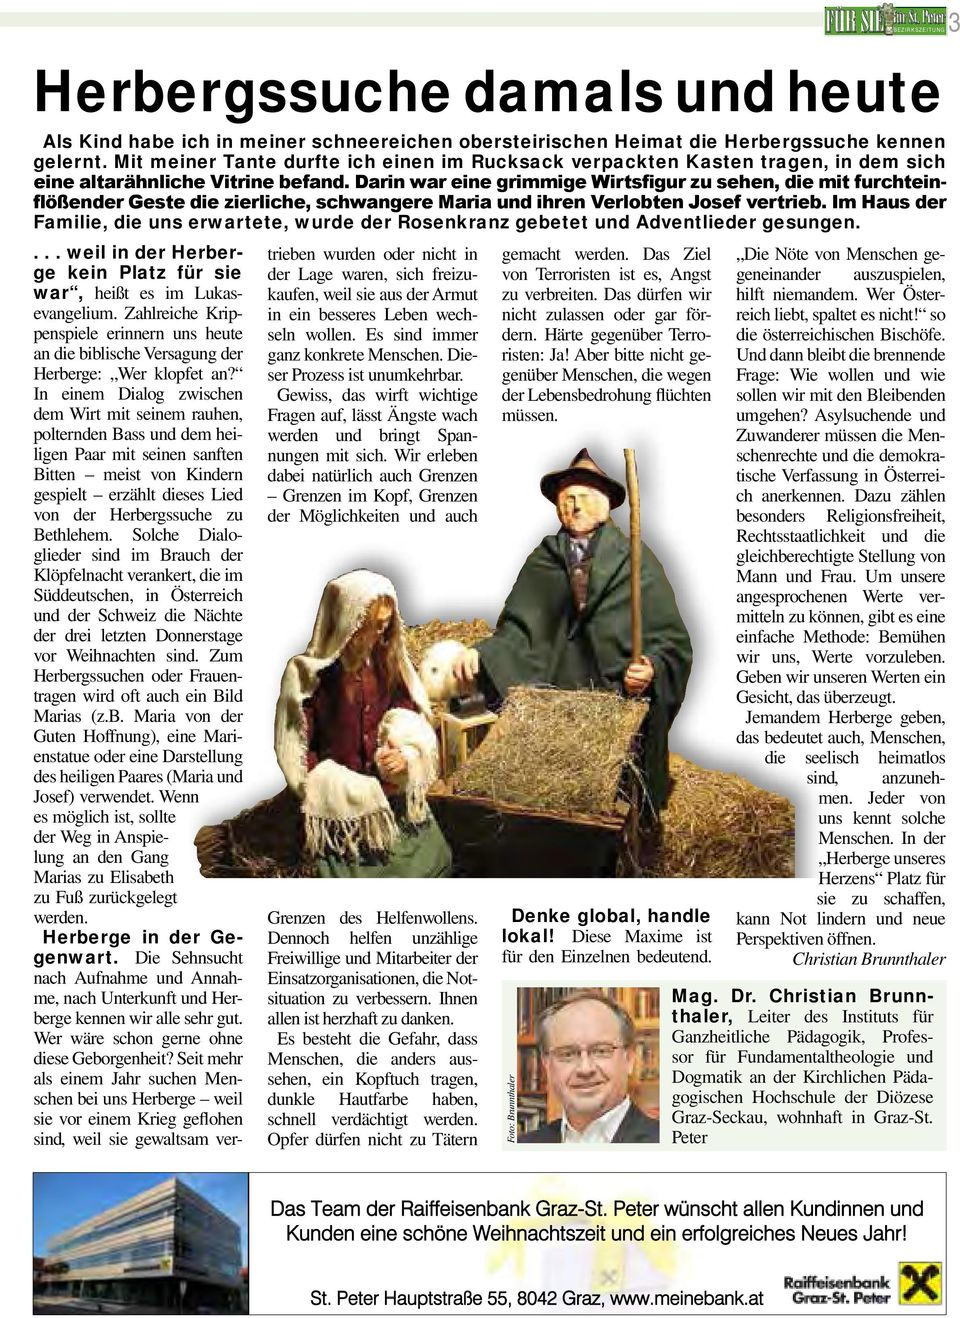 Solche Dialoglieder sind im Brauch der Klöpfelnacht verankert, die im Süddeutschen, in Österreich und der Schweiz die Nächte der drei letzten Donnerstage vor Weihnachten sind.